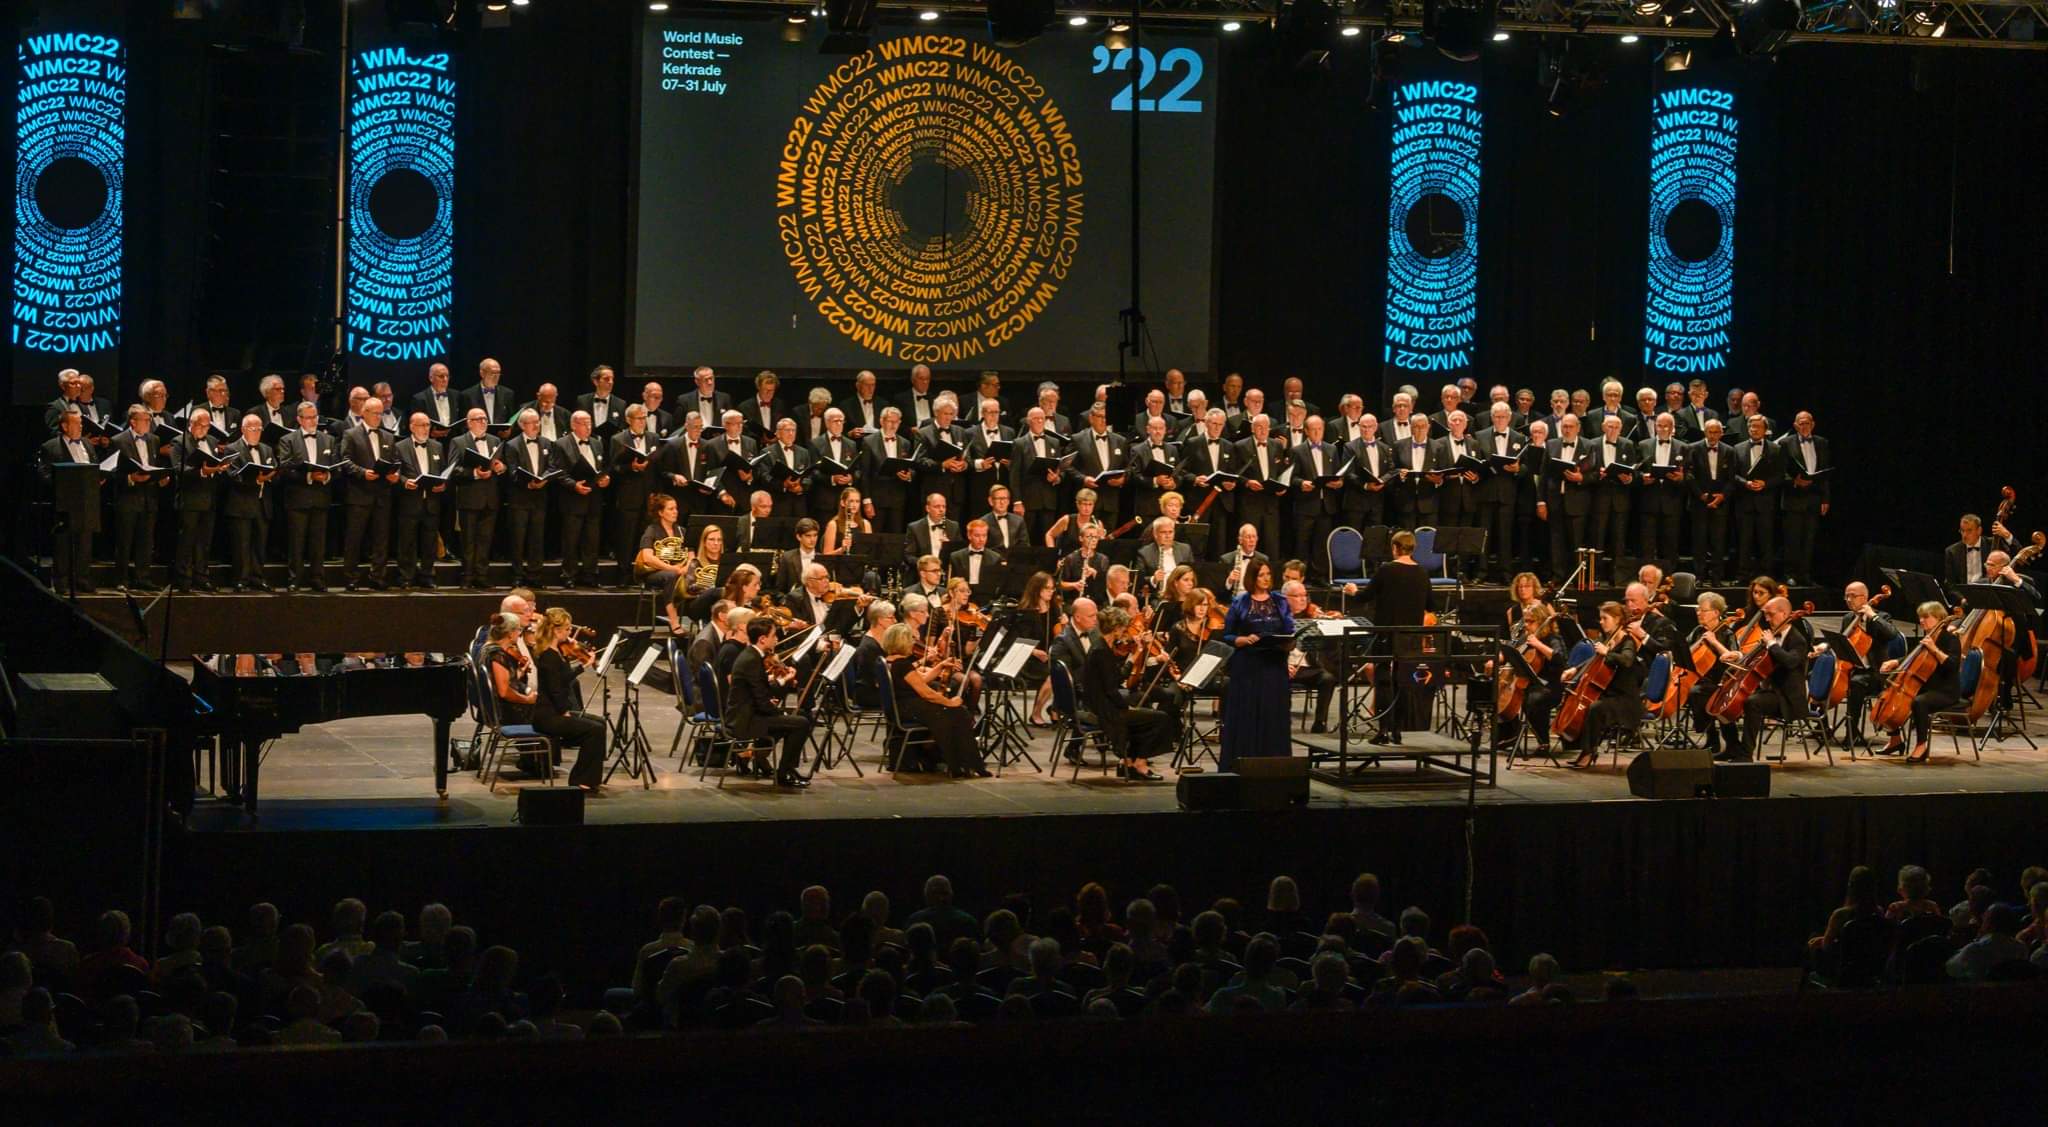 Mannenkoren Alt Rhapsodie Brahms WMC 2022